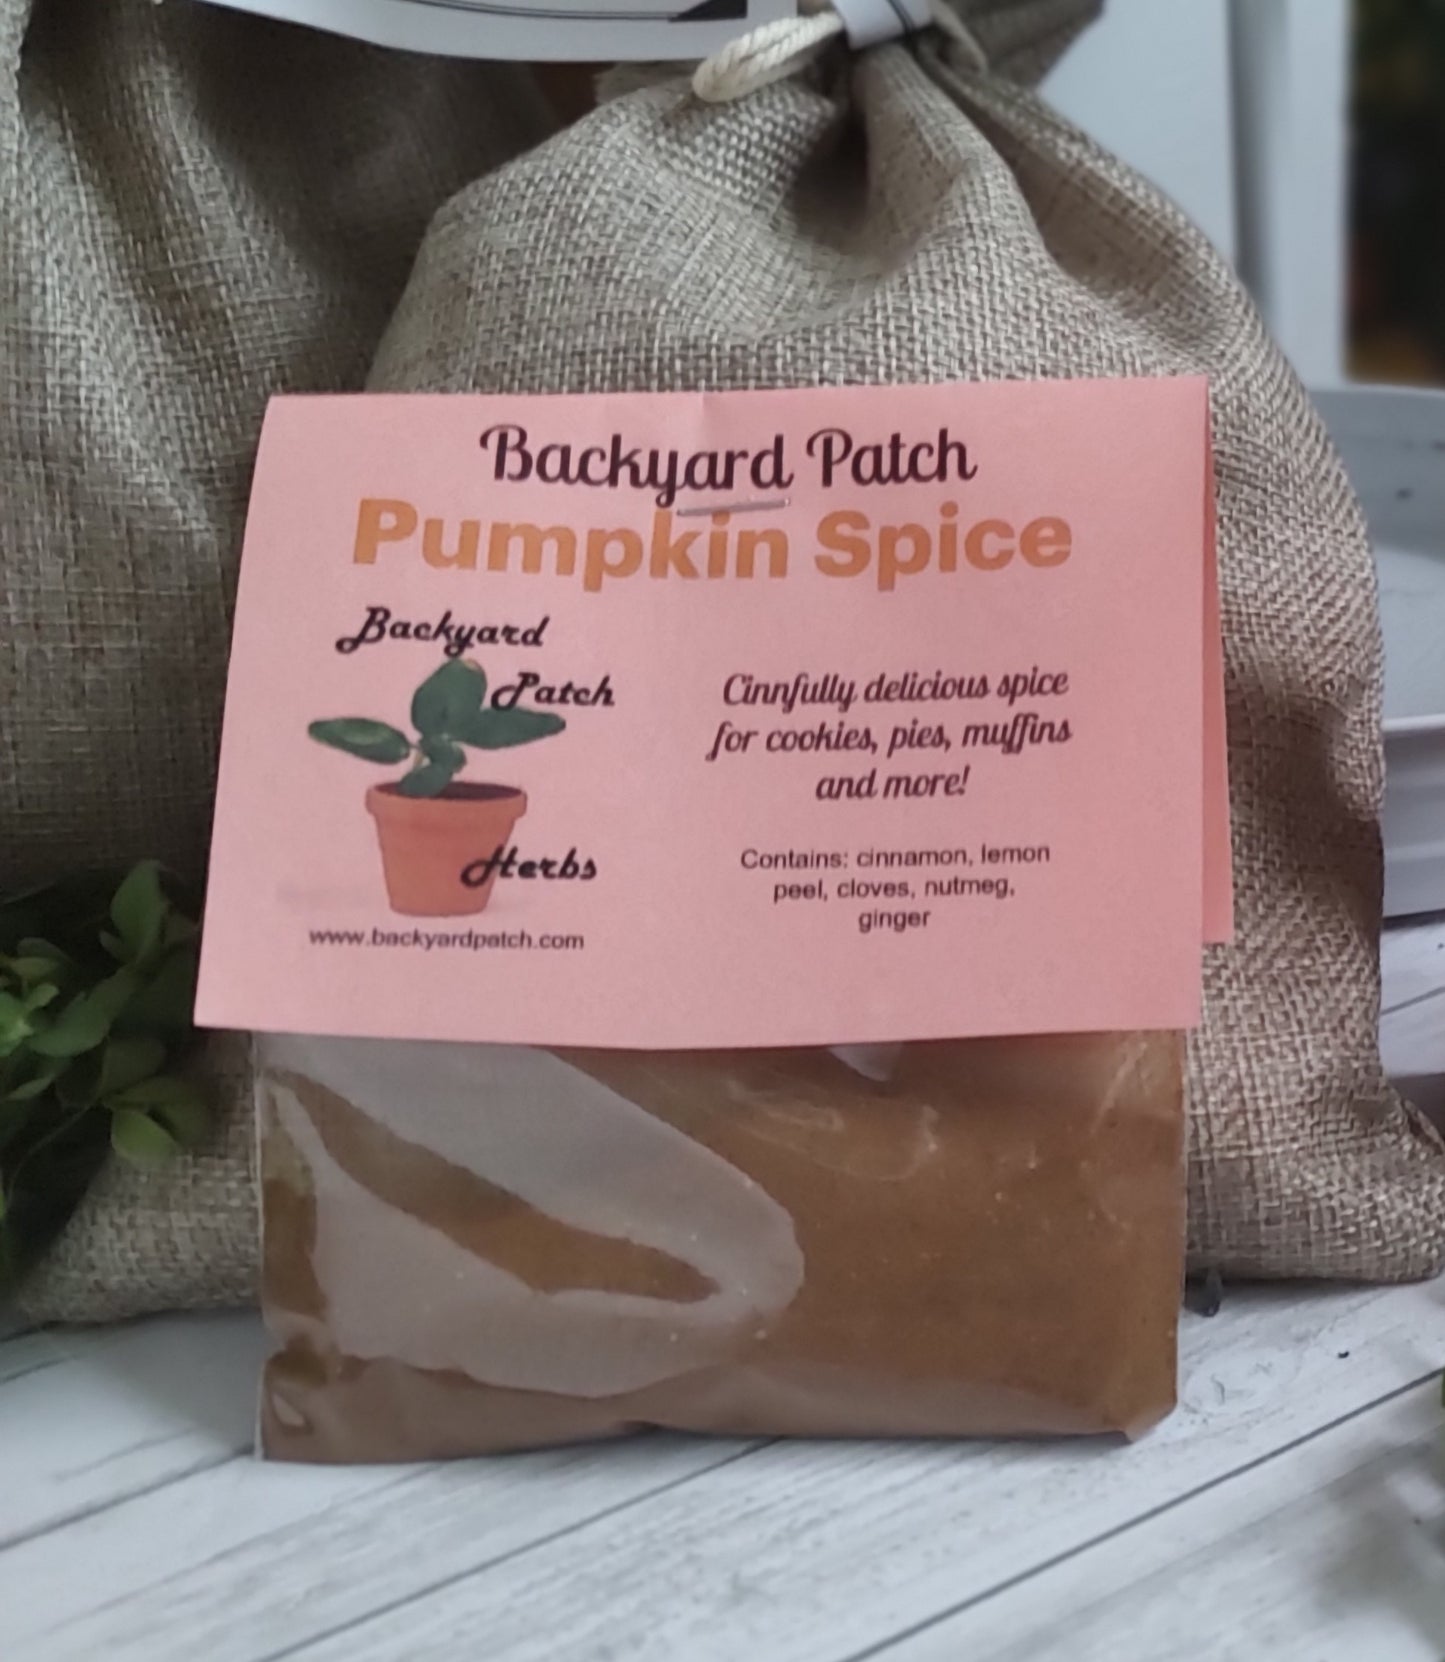 Pumpkin Spice Blend - Cinnful Dessert Blend, Pumpkin Pie Spice Mix, Apple Pie Spice Mix, cinnamon seasoning